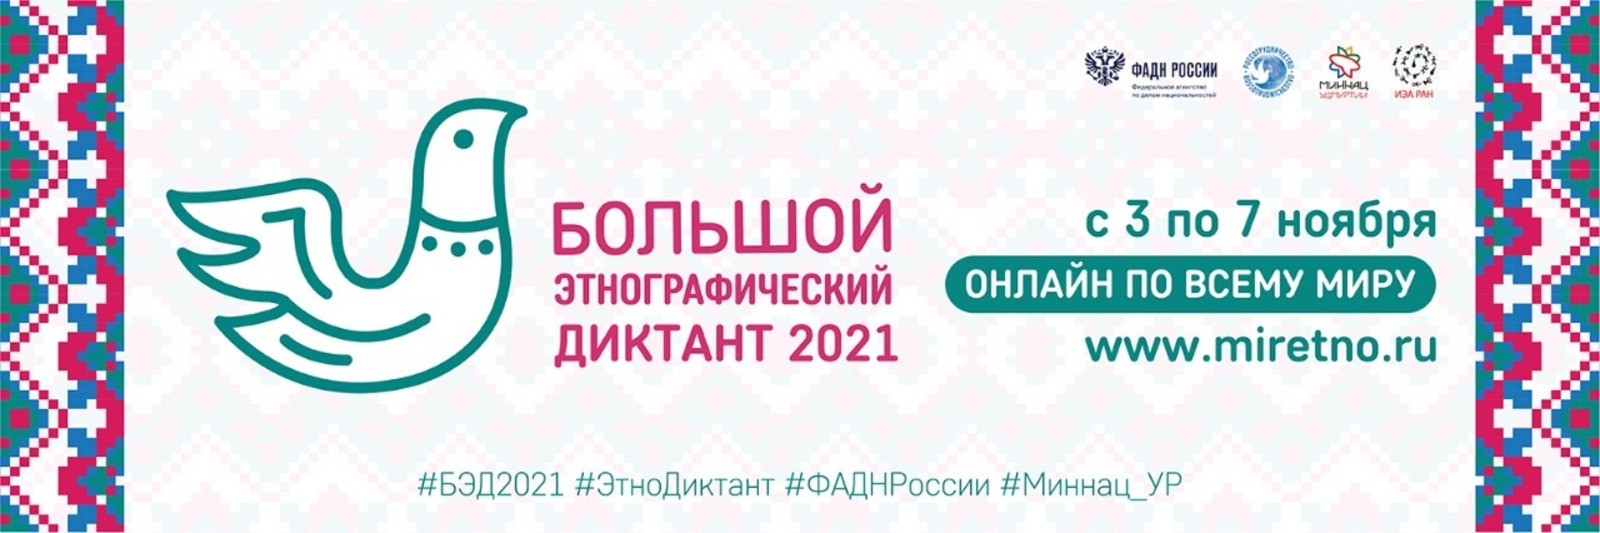 Республика Башкортостан поддержит акцию "Большой этнографический диктант"